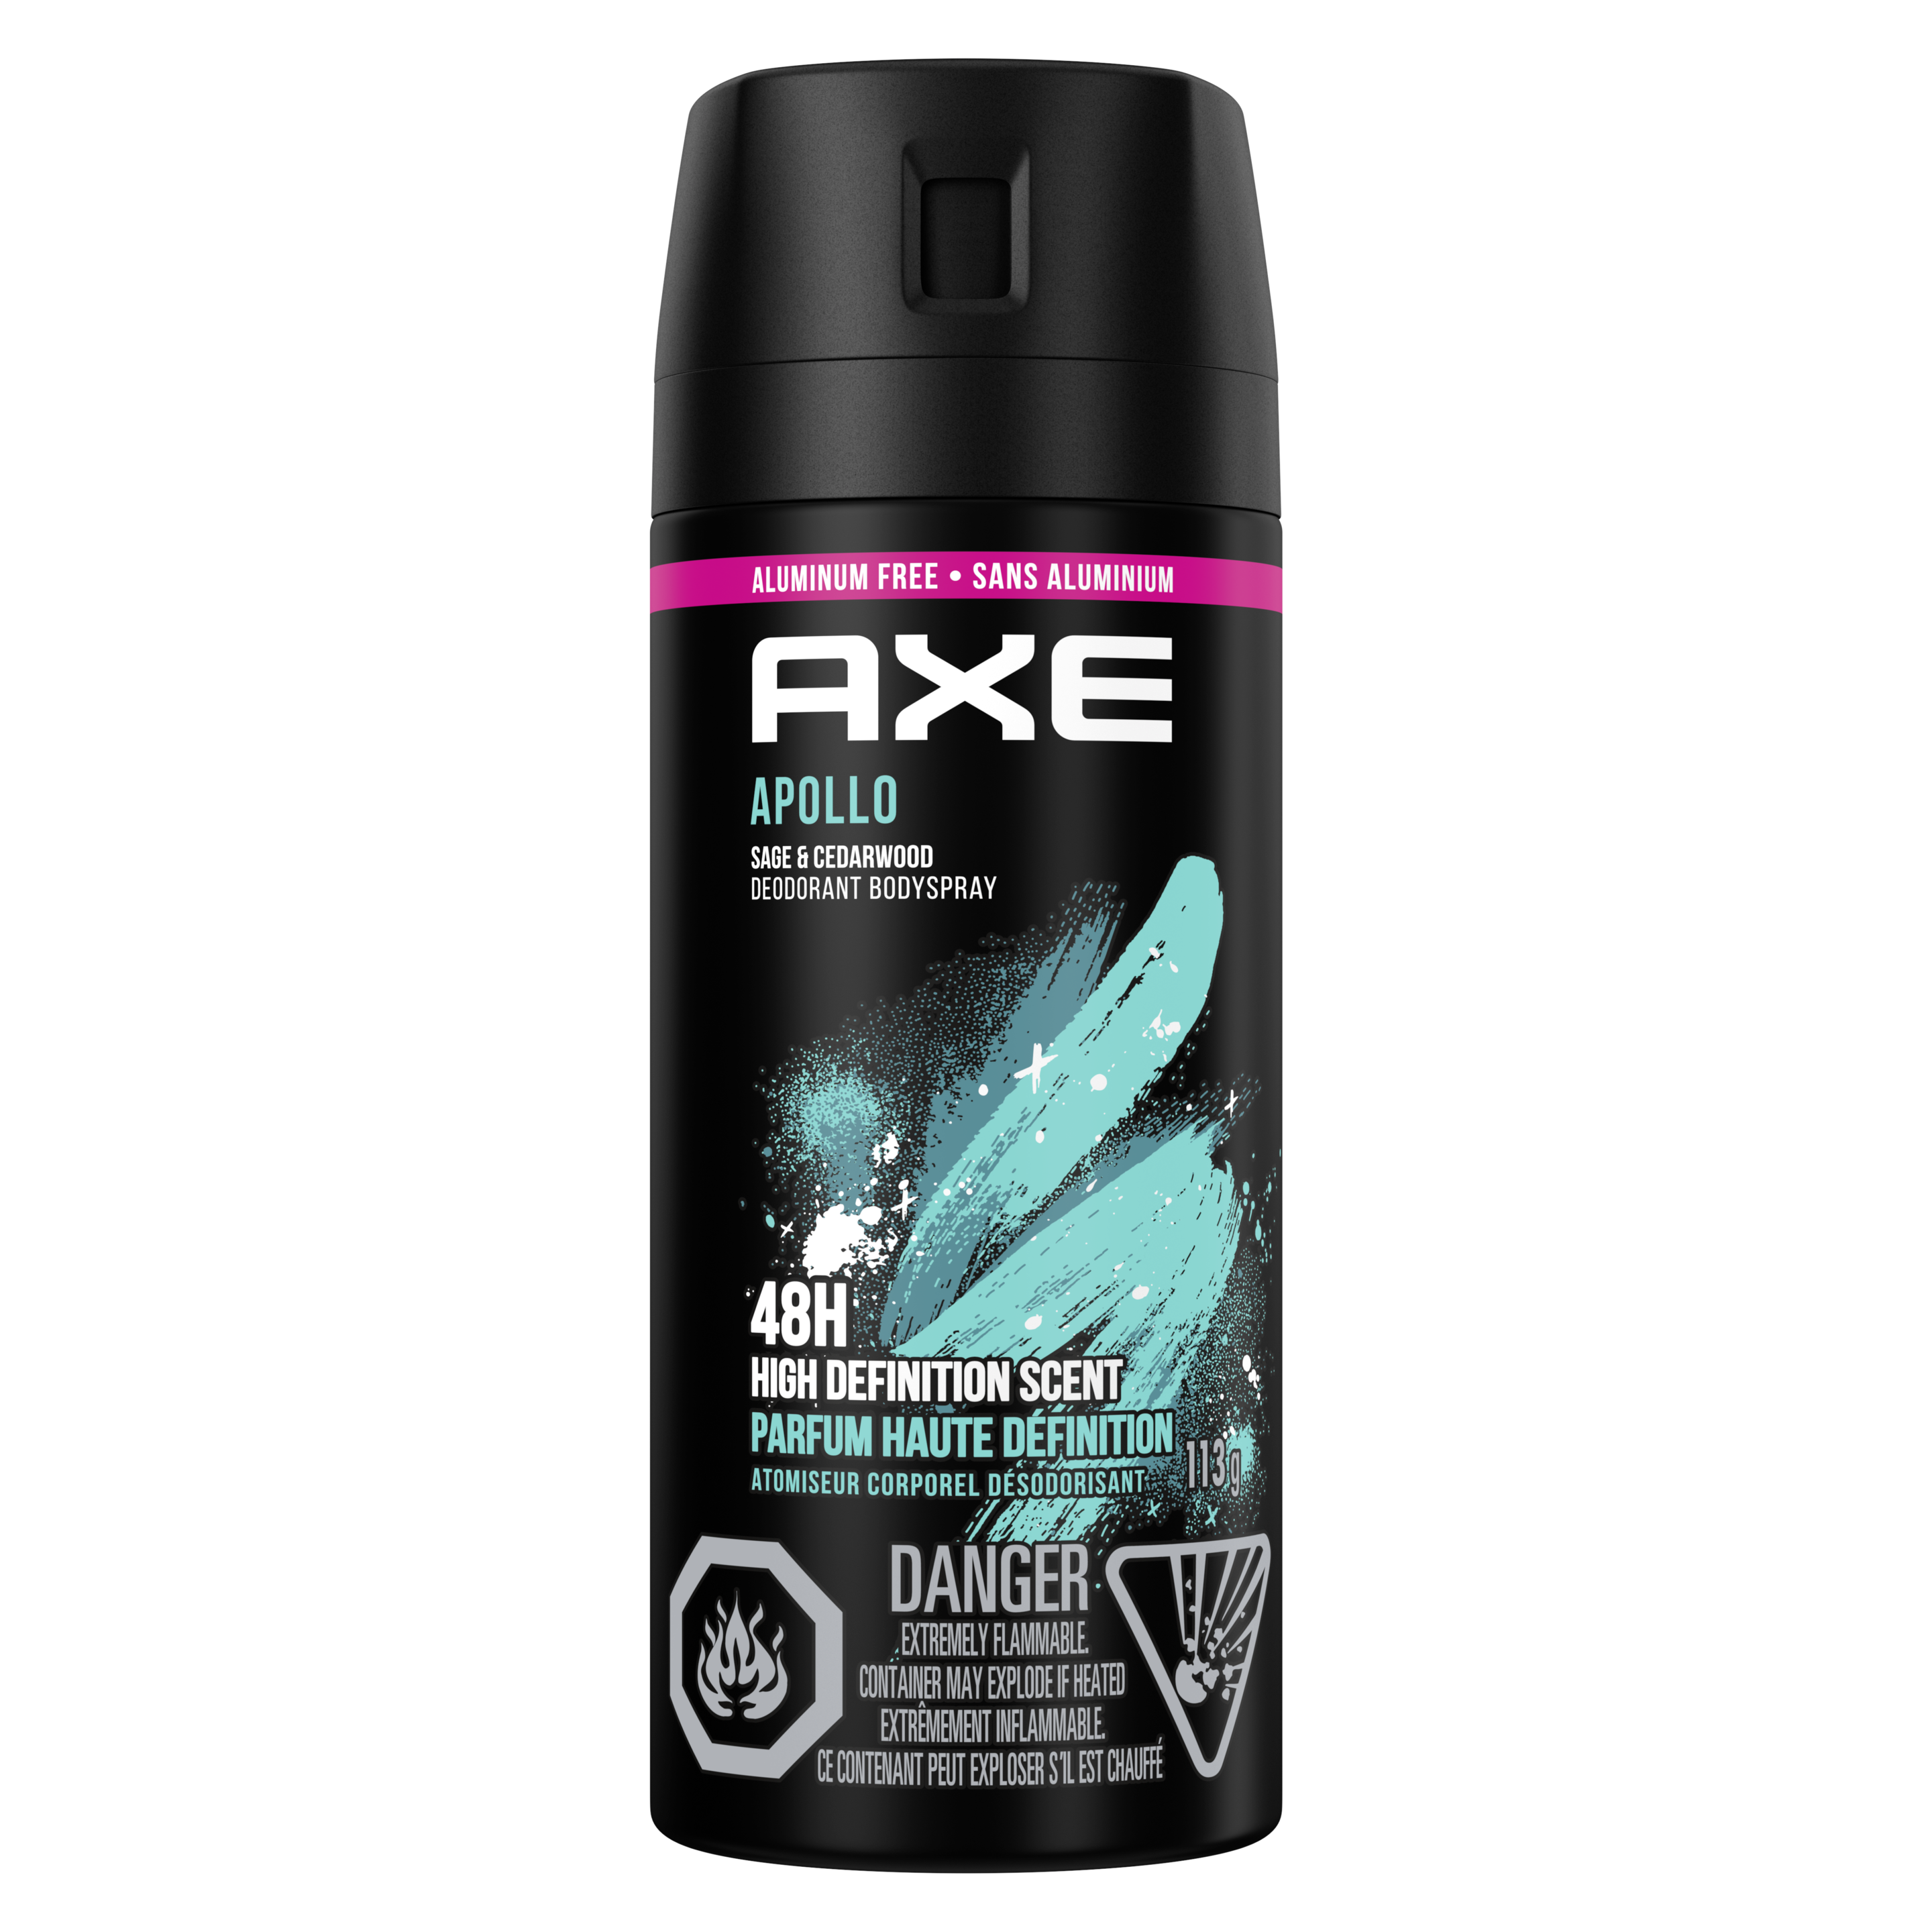 AXE Apollo Deodorant Body Spray